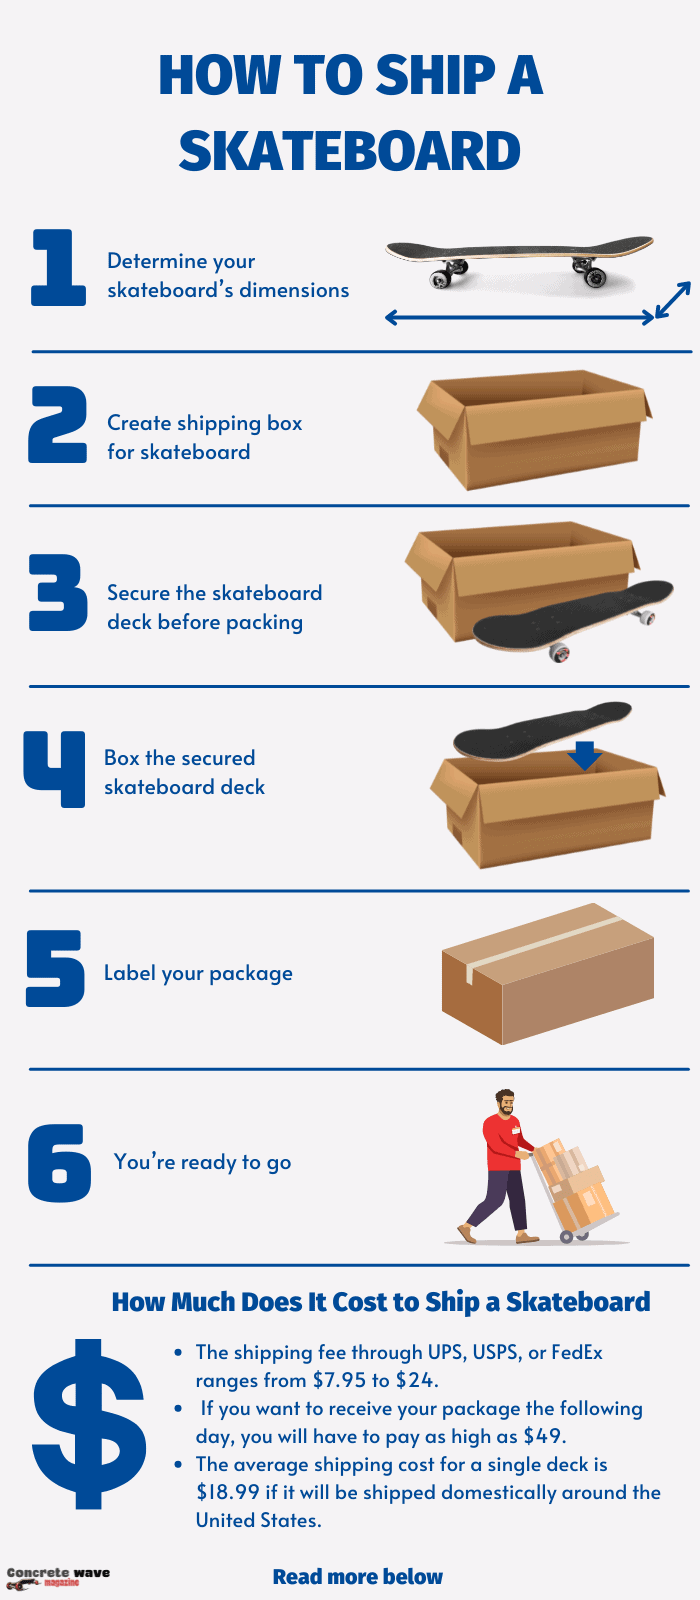 shipping-box-for-skateboard